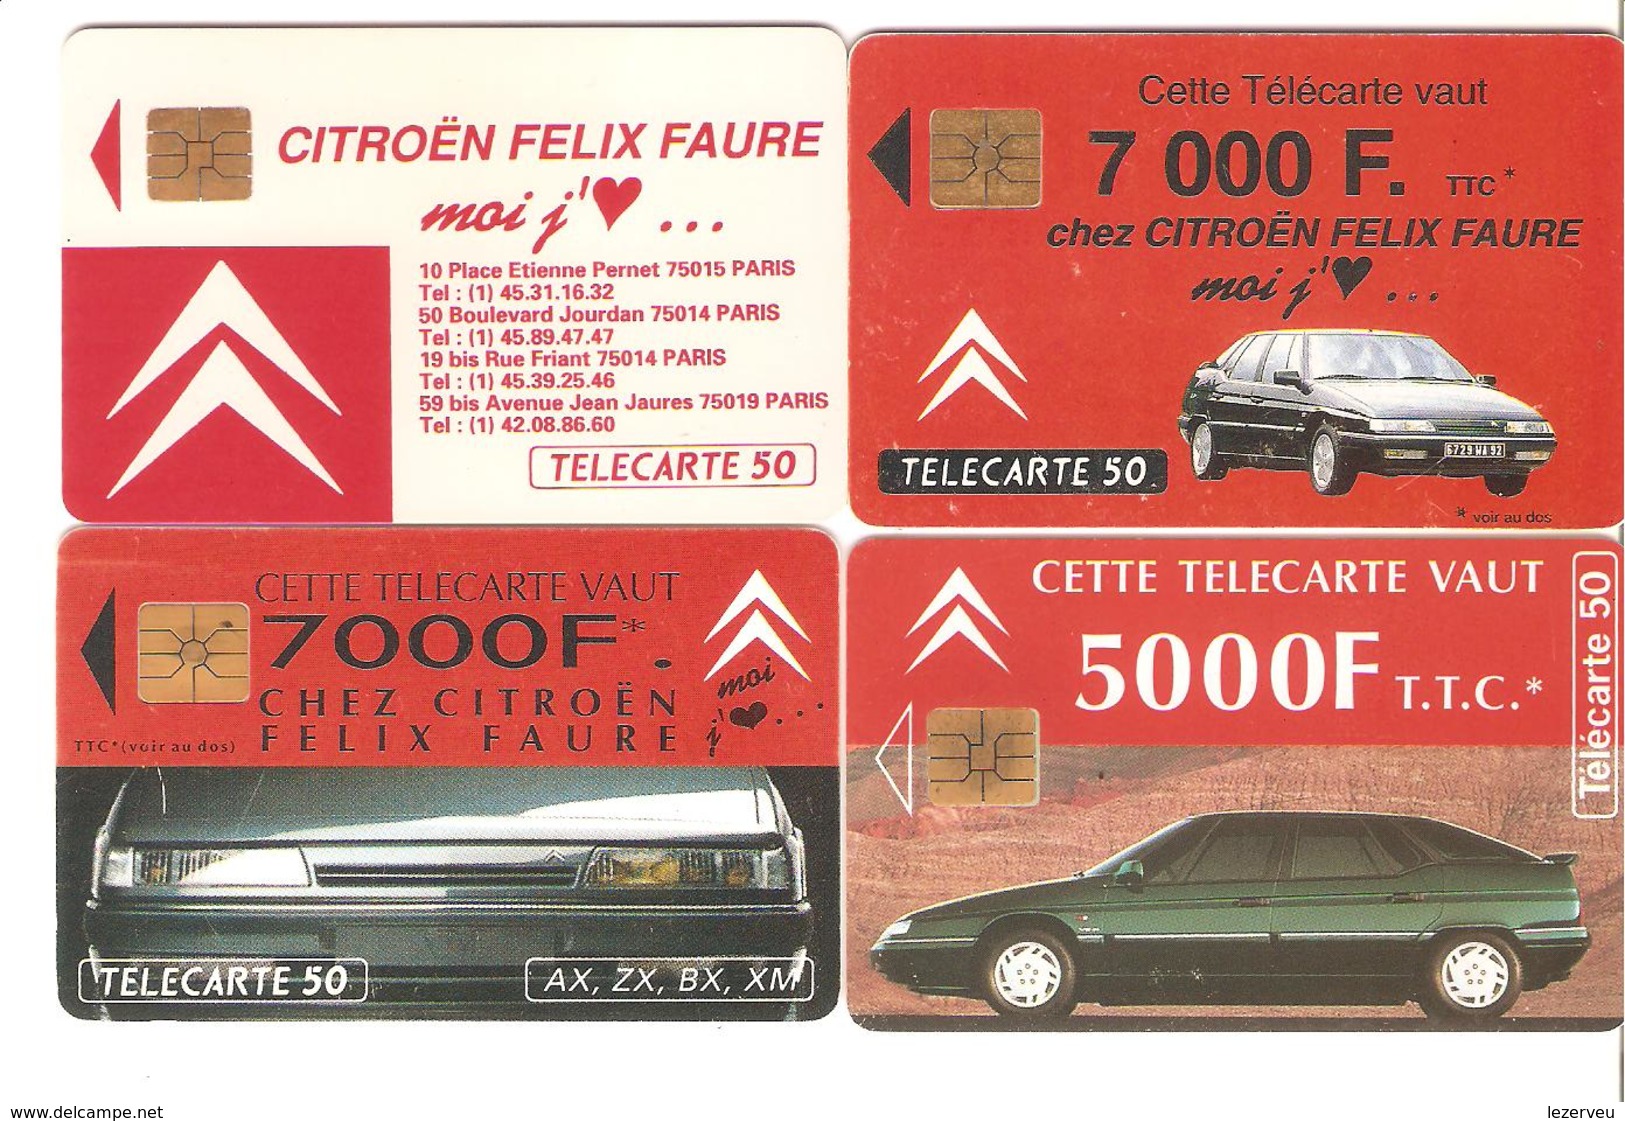 TELECARTES LOT DE 4 CITROEN FELIX FAURE - 1990